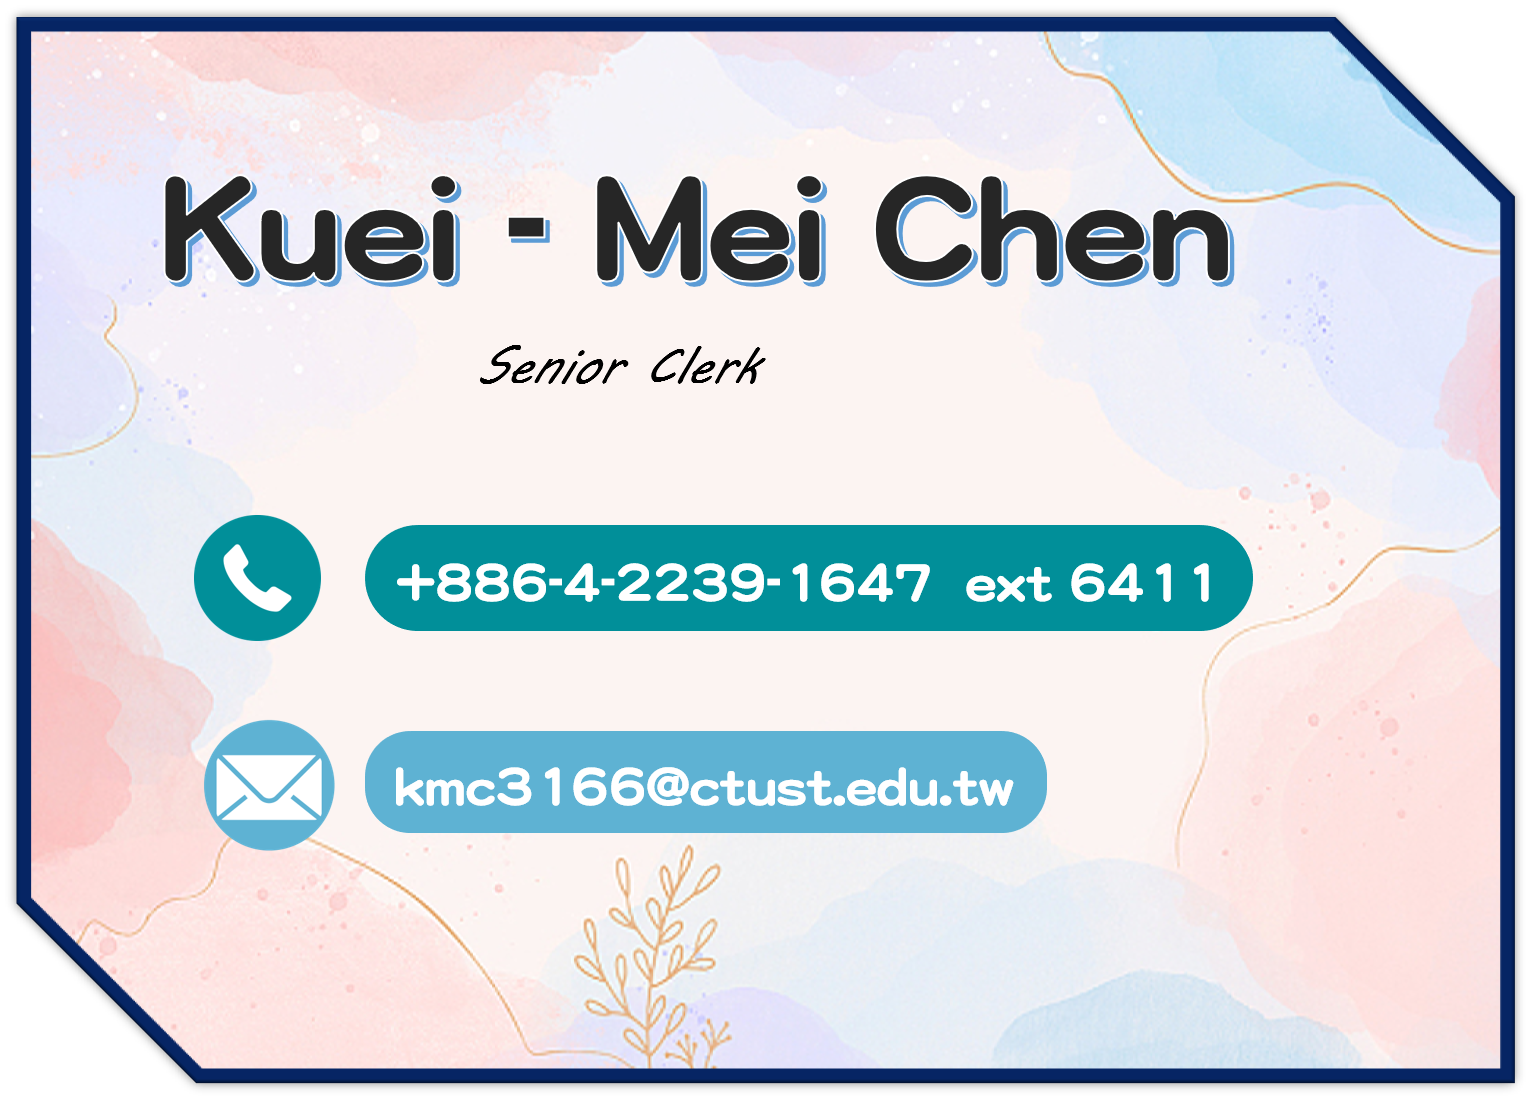 Kuei - Mei Chen